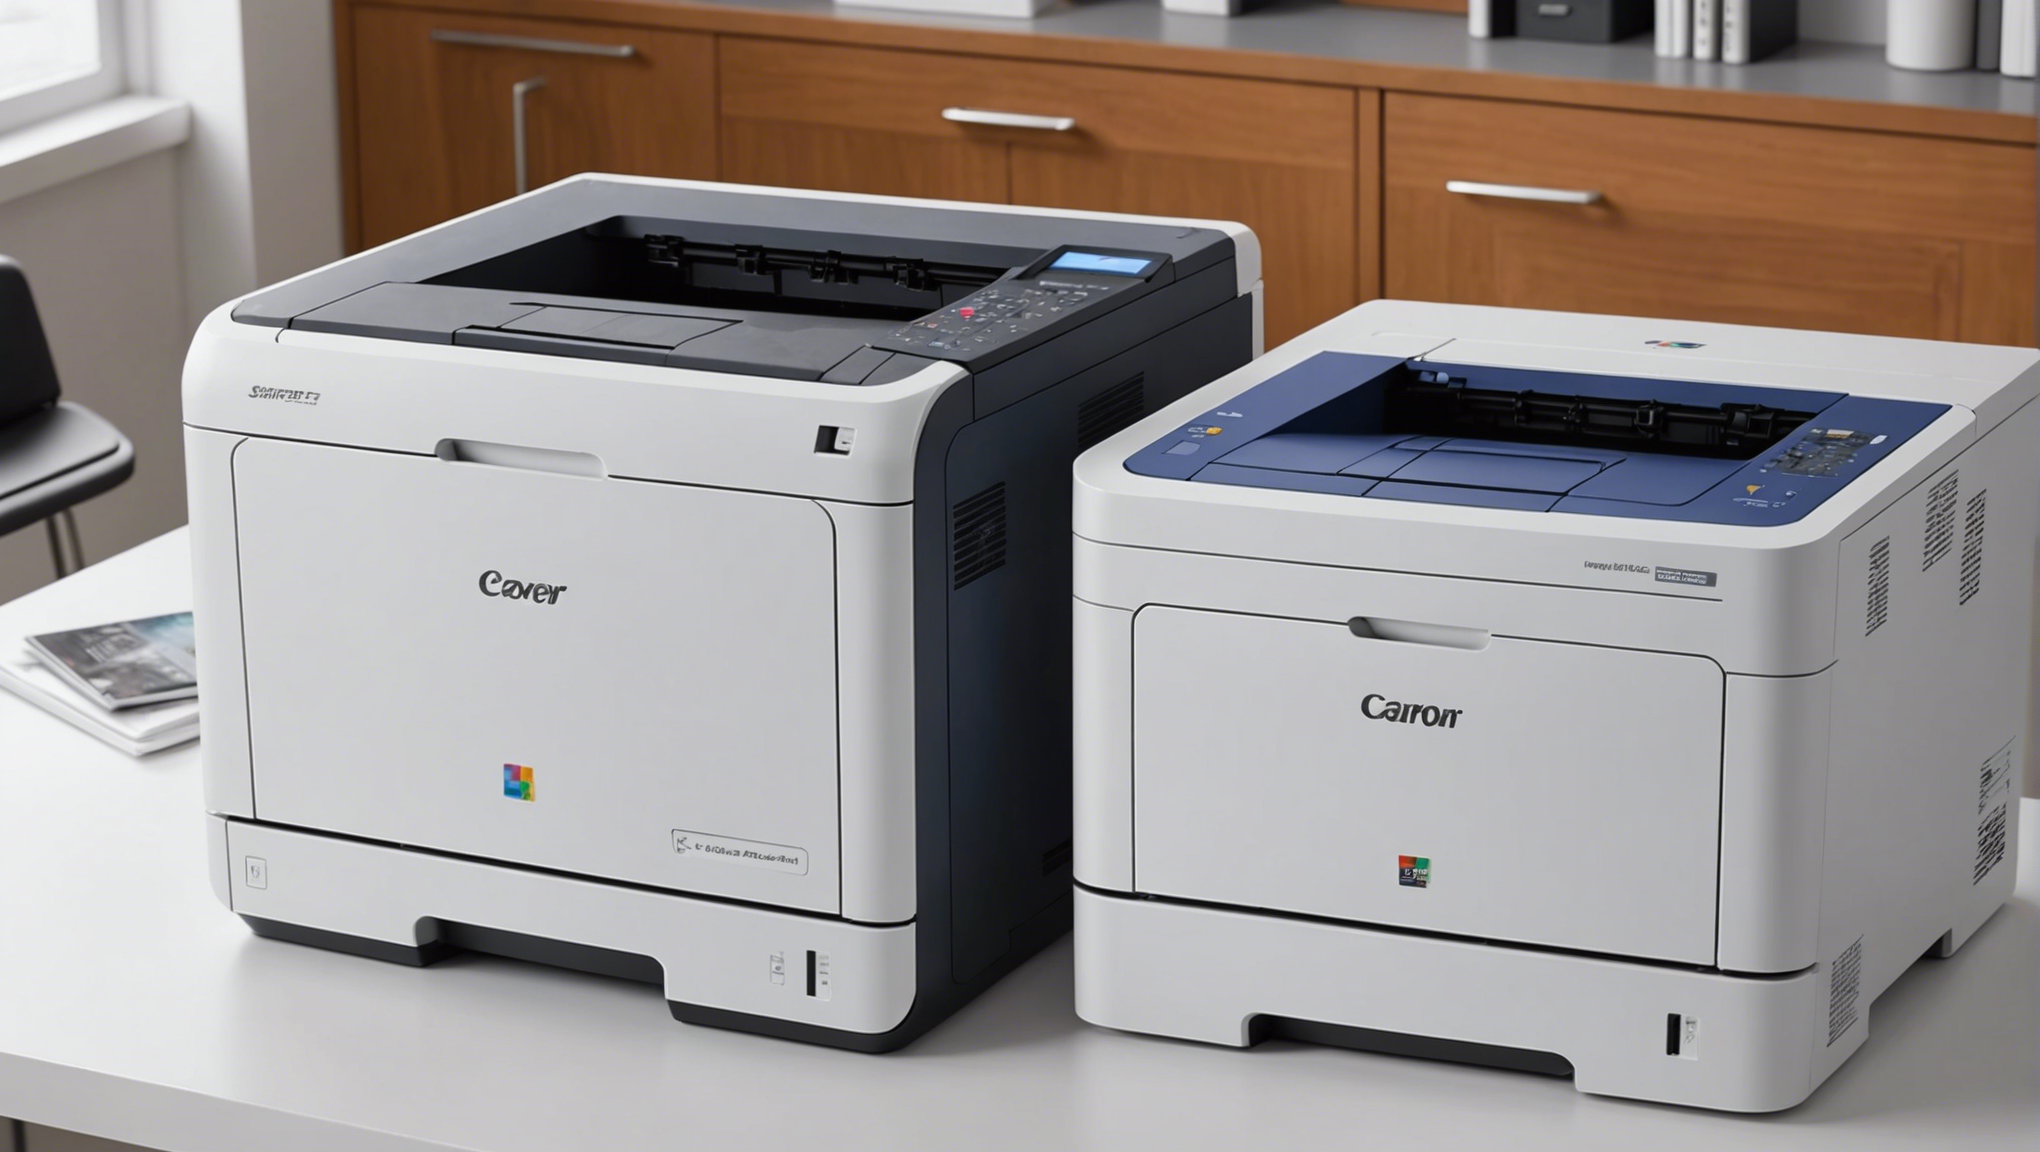 découvrez les imprimantes professionnelles à prix abordables: comparez les avantages des imprimantes laser couleur et monochrome pour répondre à vos besoins d'impression.